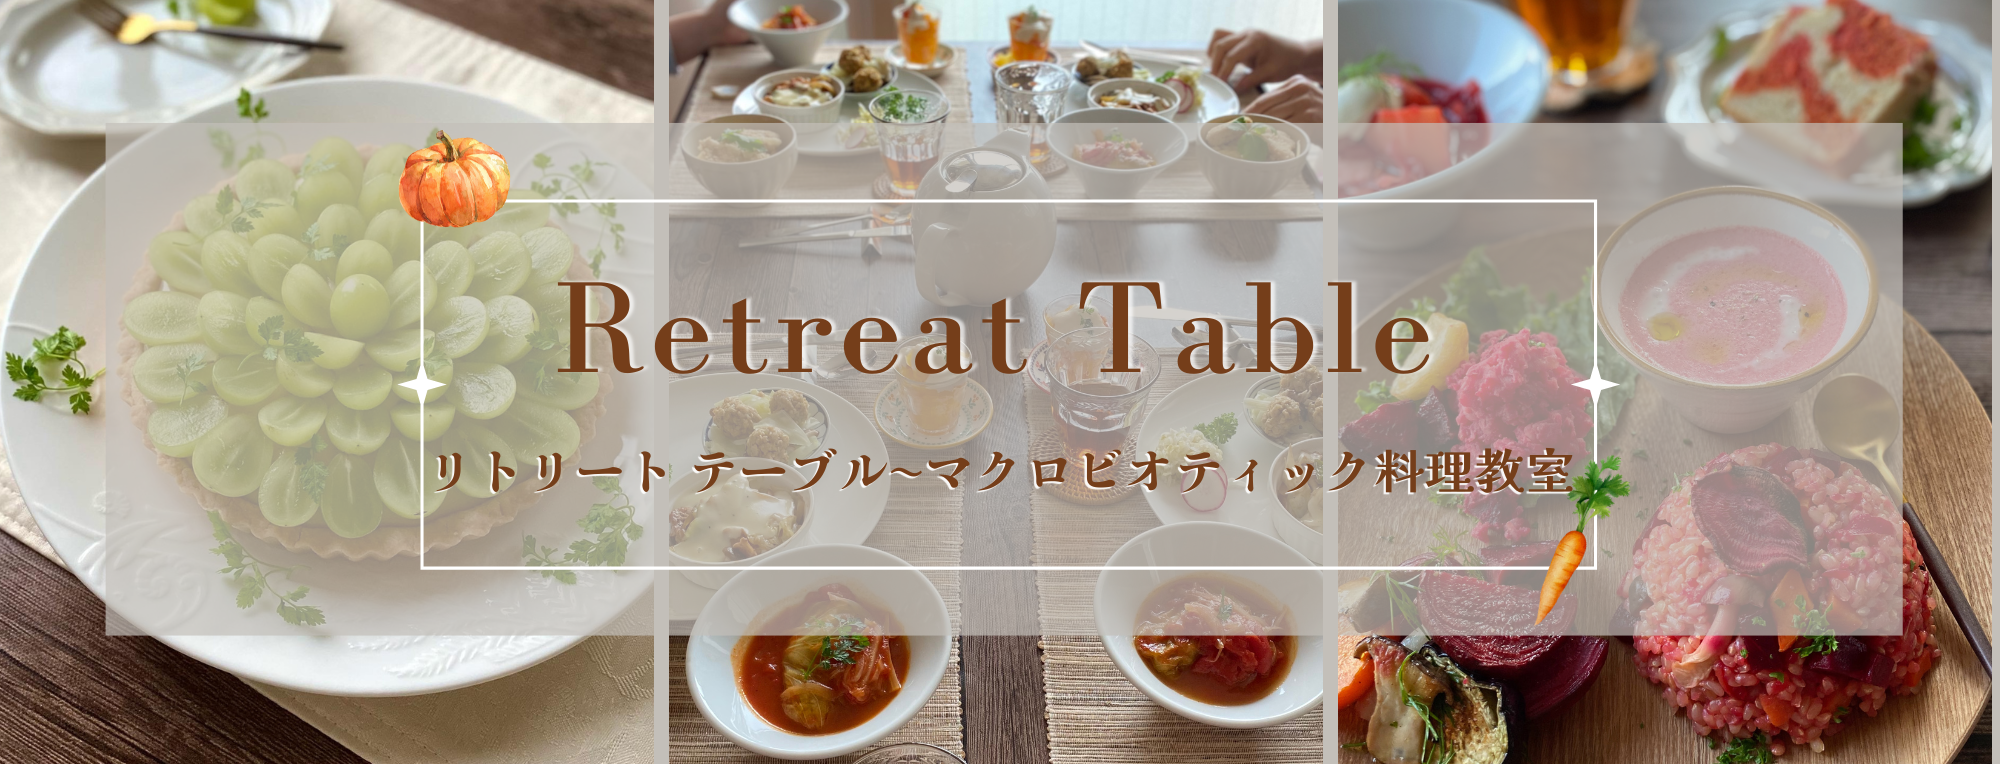 東京マクロビ料理教室・栄養士主催で少人数&初心者様から簡単料理